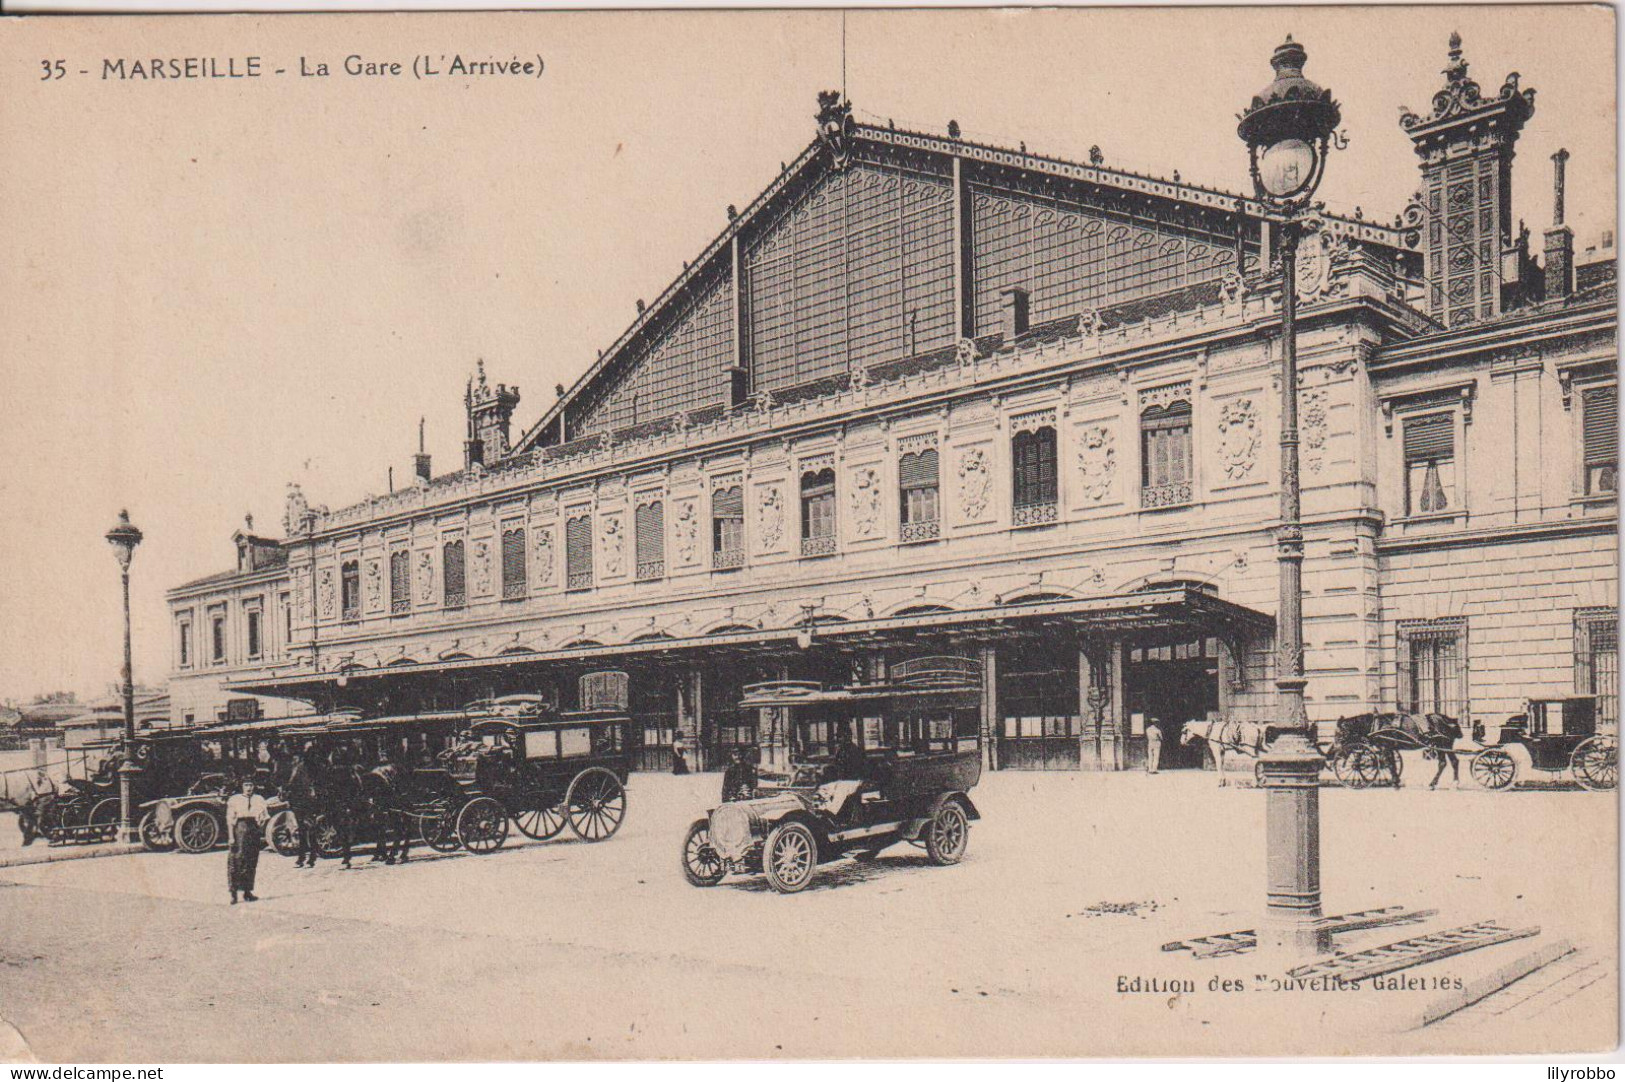 FRANCE - MARSEILLE Le Gare (L'Arrivee) - Stationsbuurt, Belle De Mai, Plombières